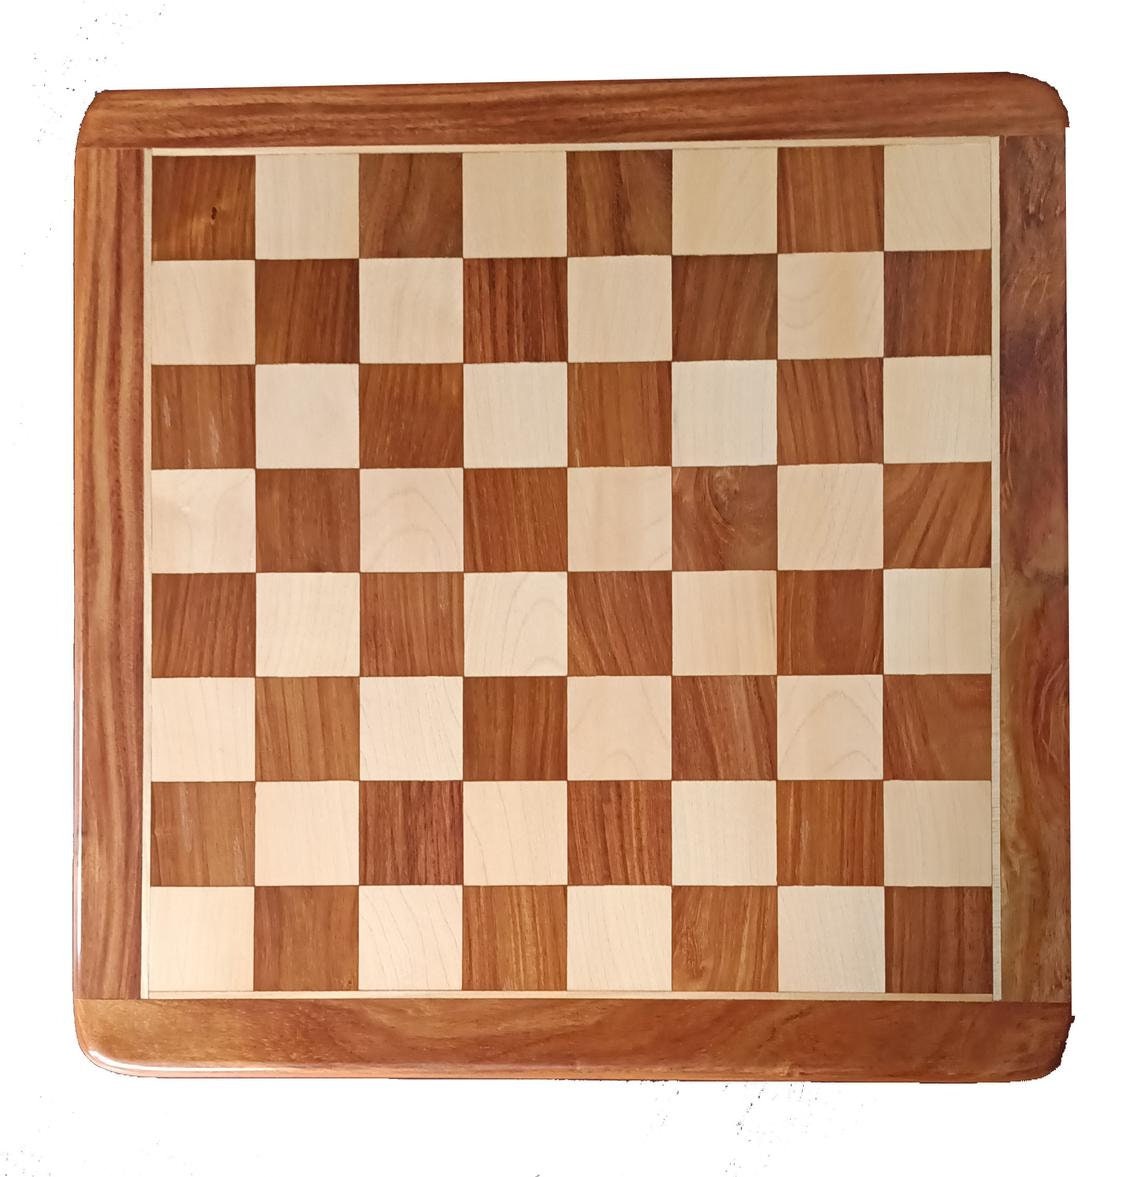 Pièces d'échecs de collection allemandes des années 1920 uniquement Staunton Set - Budrosewood/Buis - 3,75" King, lesté 2 reines supplémentaires